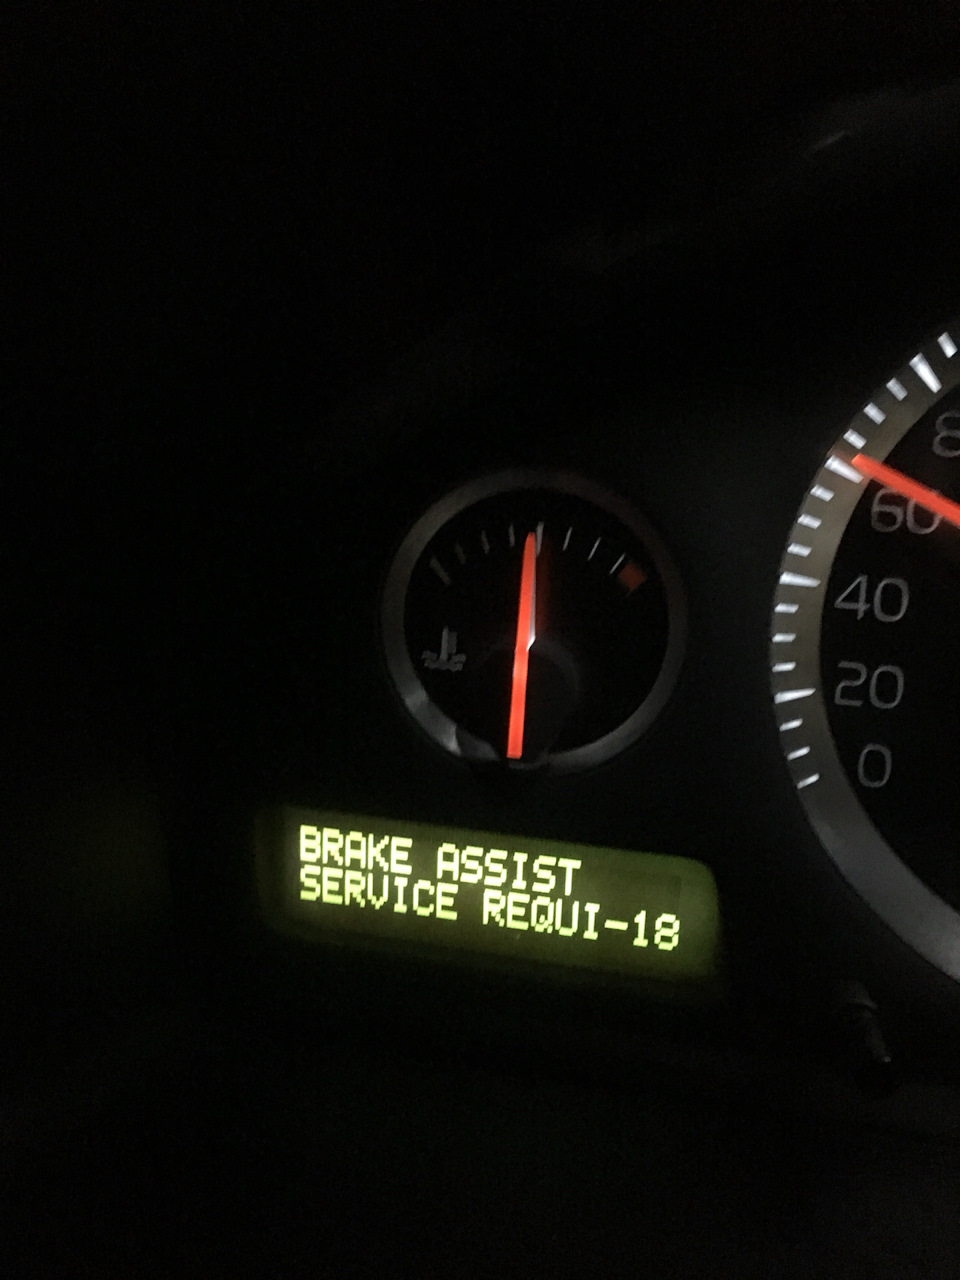 Ошибки volvo s60. Brake assist service requi-18 s60. Индикатор check engine Volvo s60 2015. Ошибка Вольво ХС 90 51-60. Time for Regular Maintenance 45 Volvo xc90.